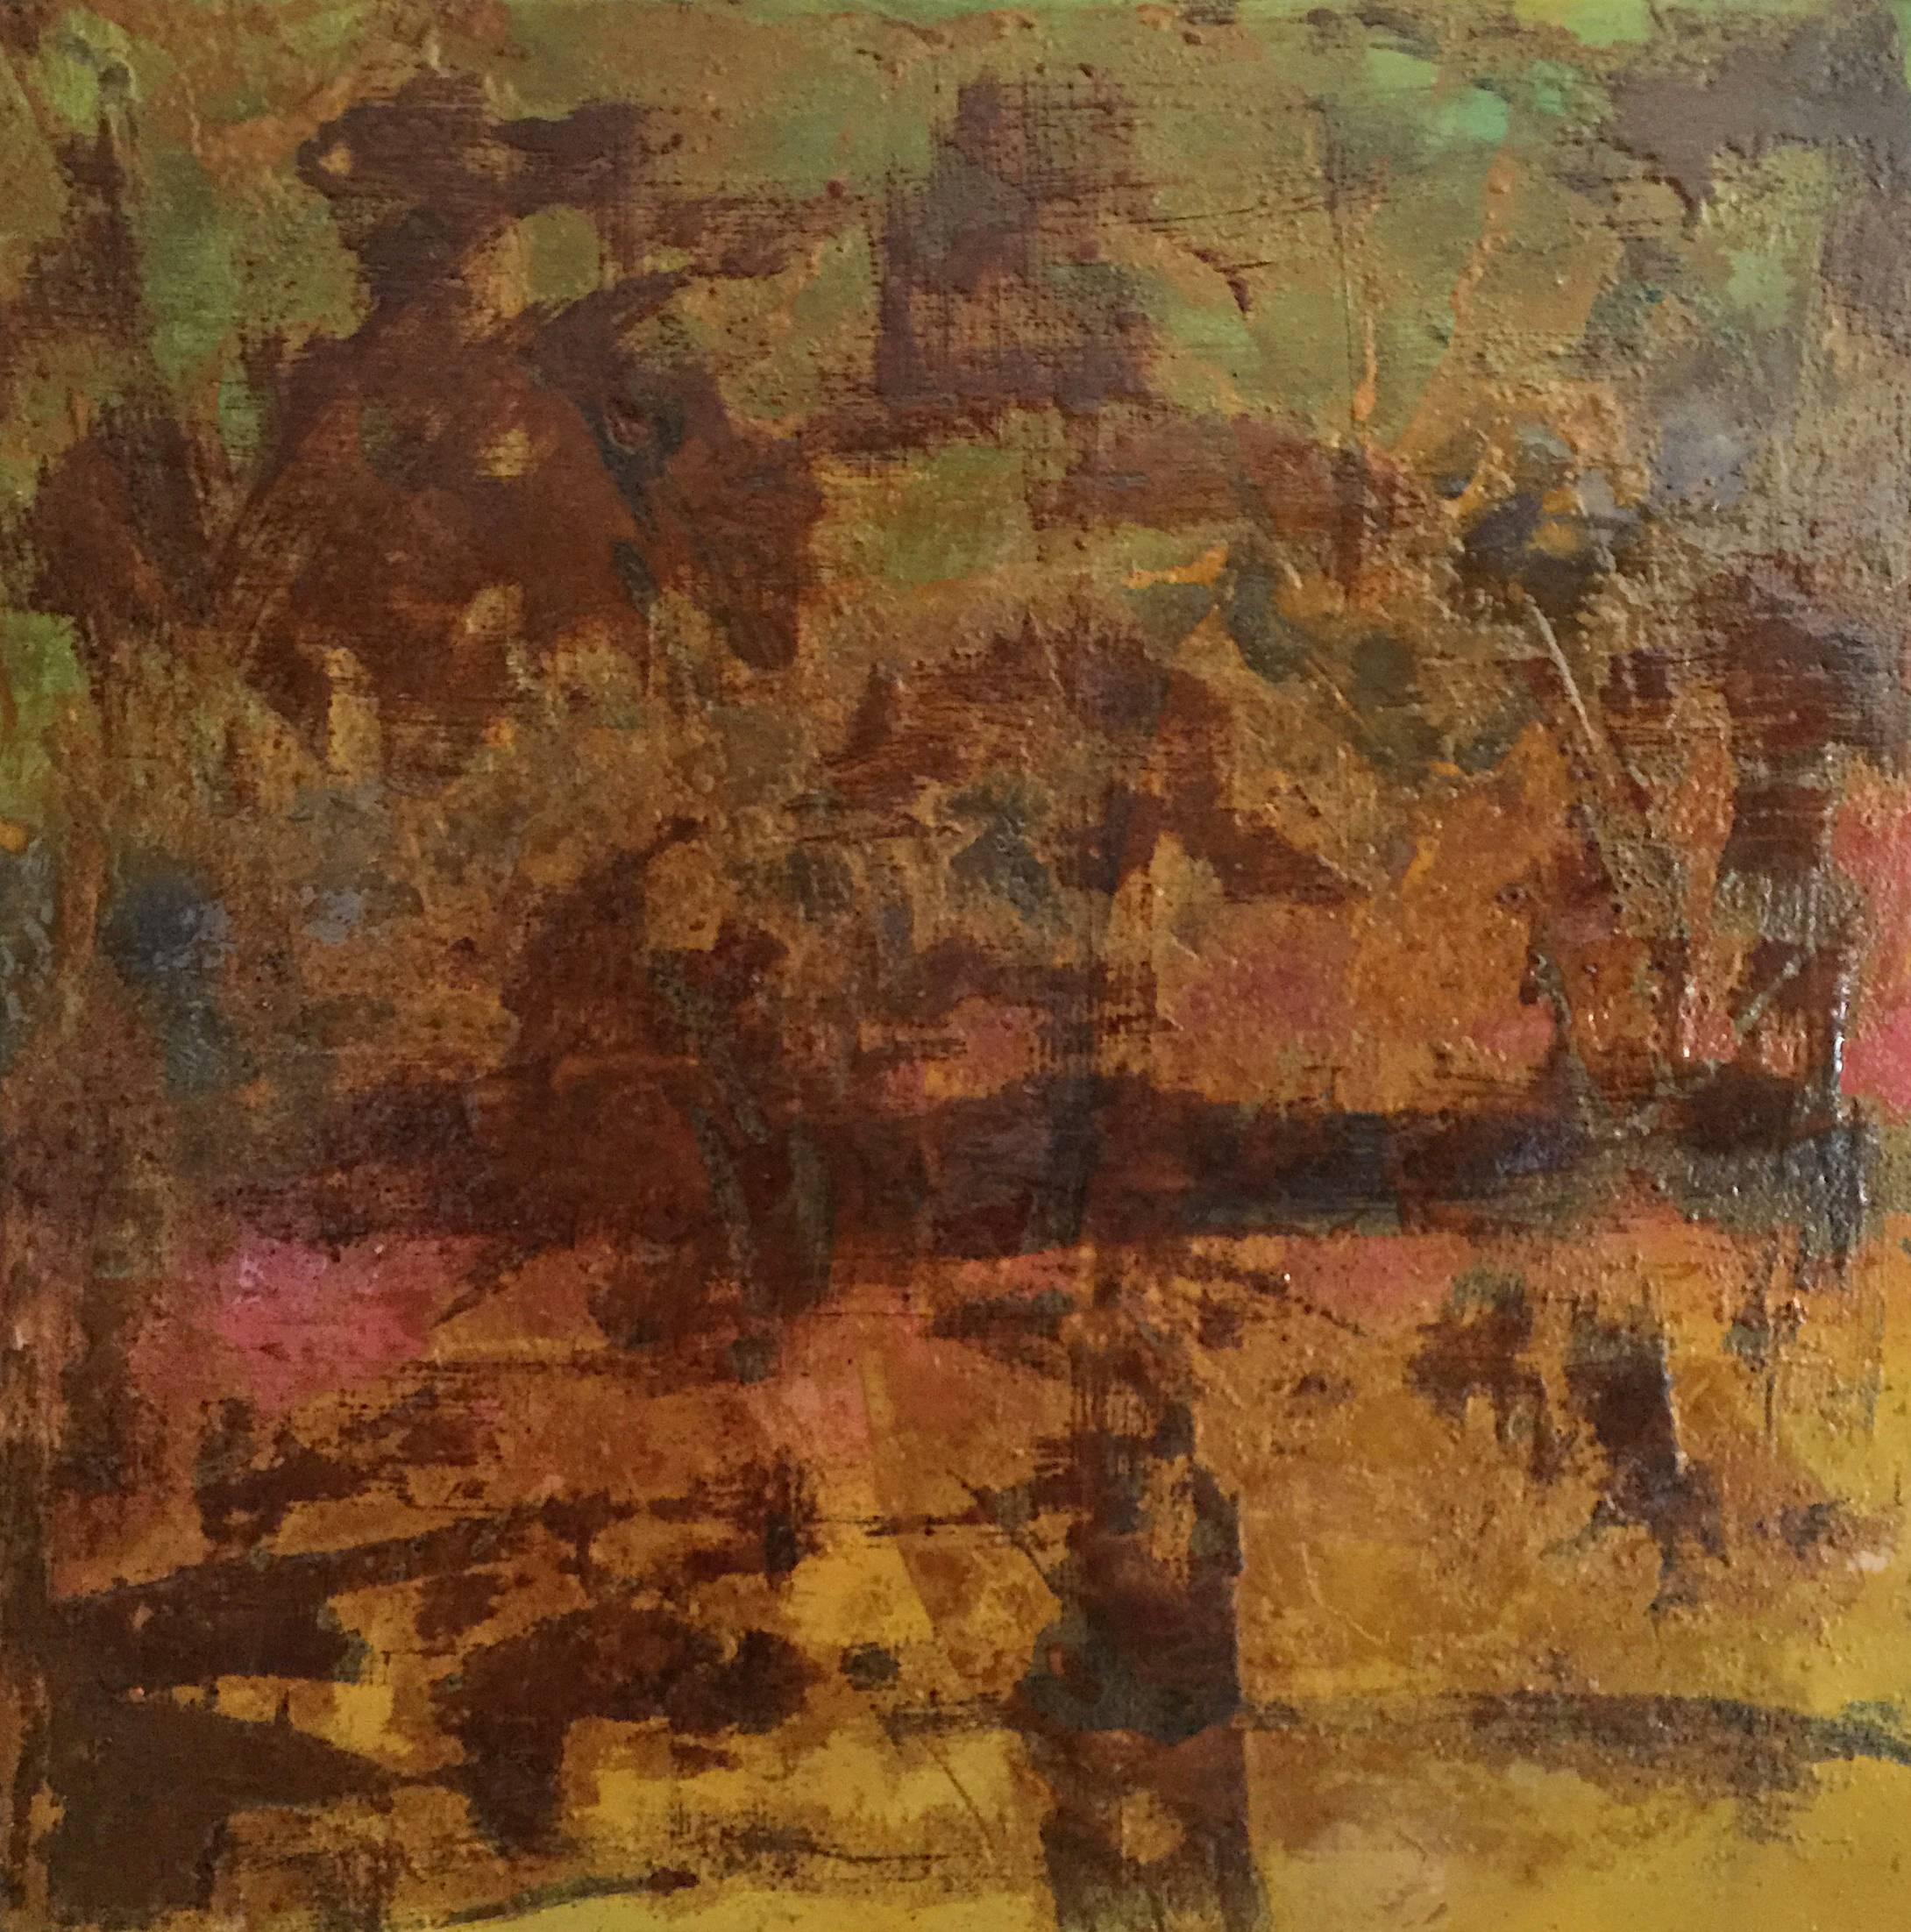 Abstract Painting Bruce Murphy - Objet adulte n°10 (peinture abstraite de couleur rouille sur tôle métallique)